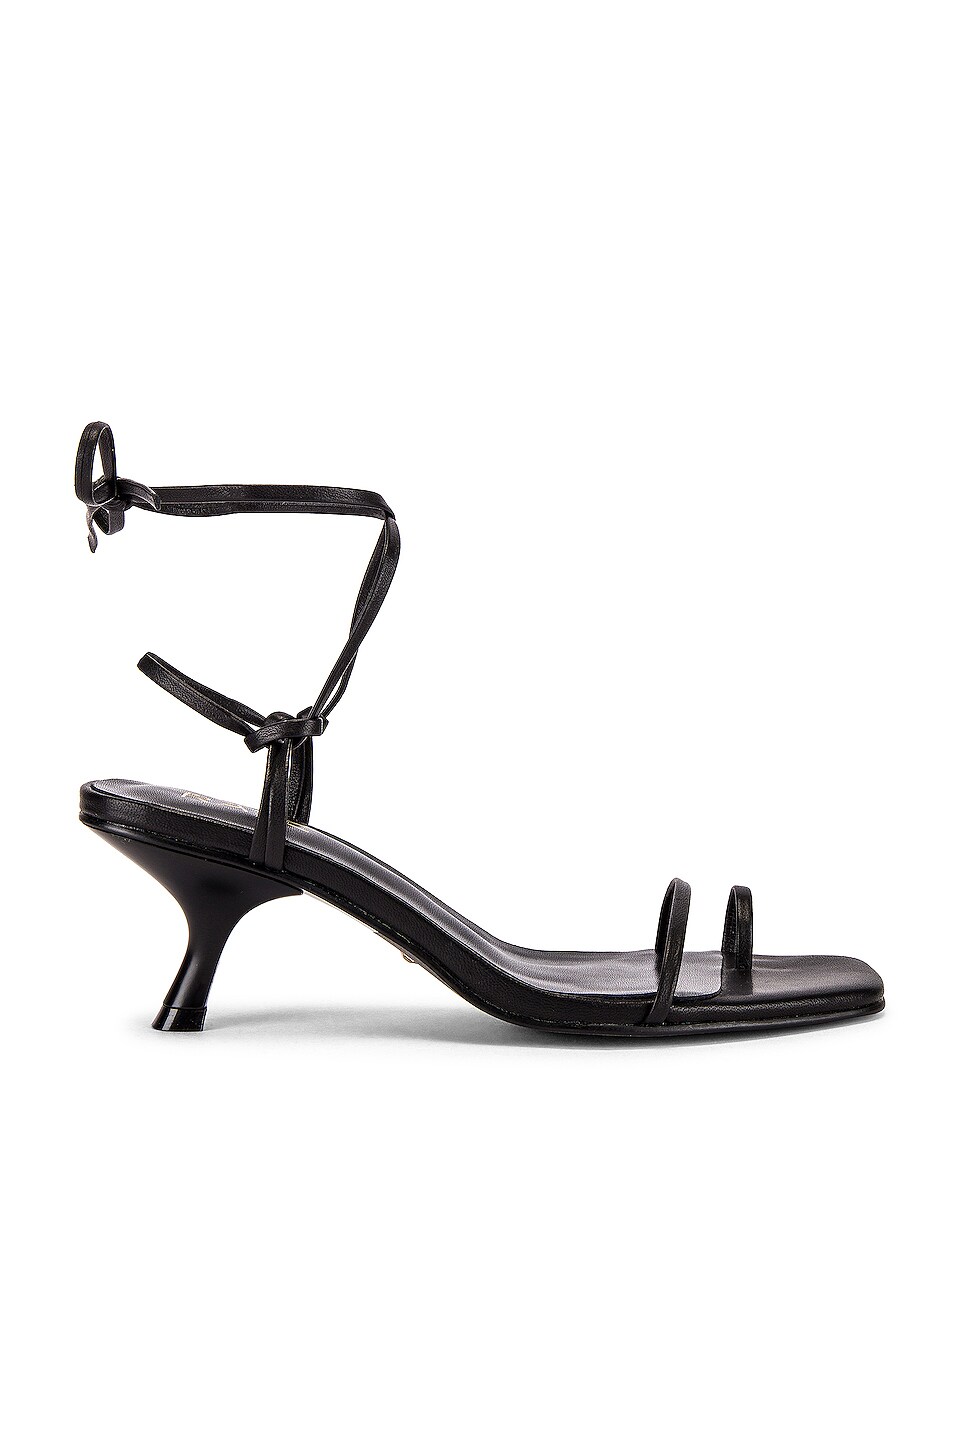 RAYE Sandie Heel in Black | REVOLVE